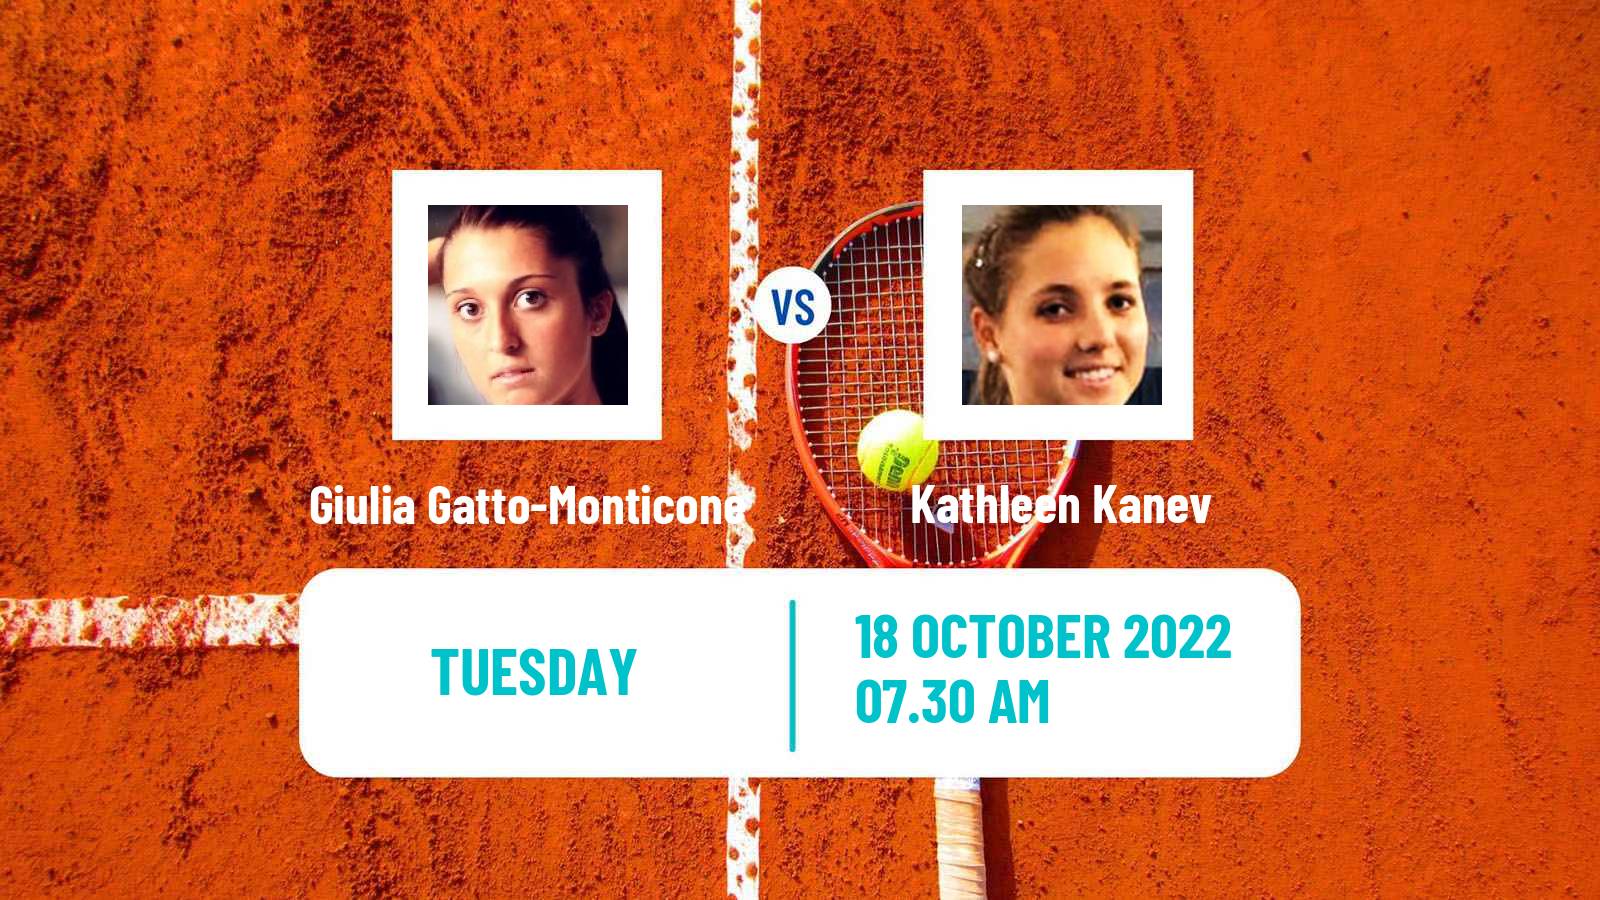 Tennis ITF Tournaments Giulia Gatto-Monticone - Kathleen Kanev